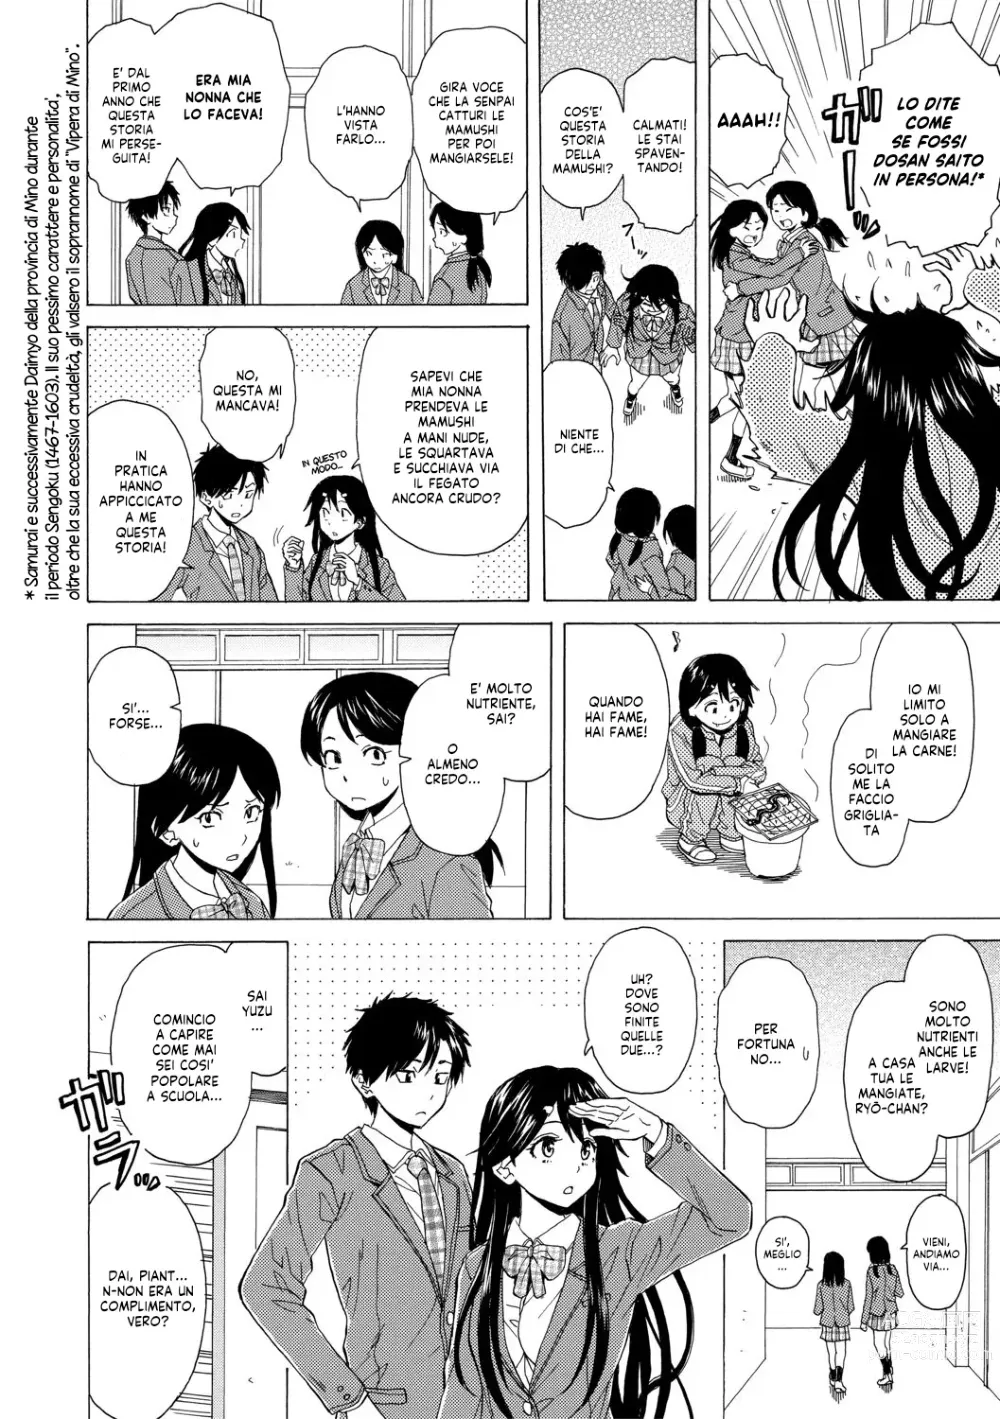 Page 10 of manga Una Professoressa Escort in Camera Mia